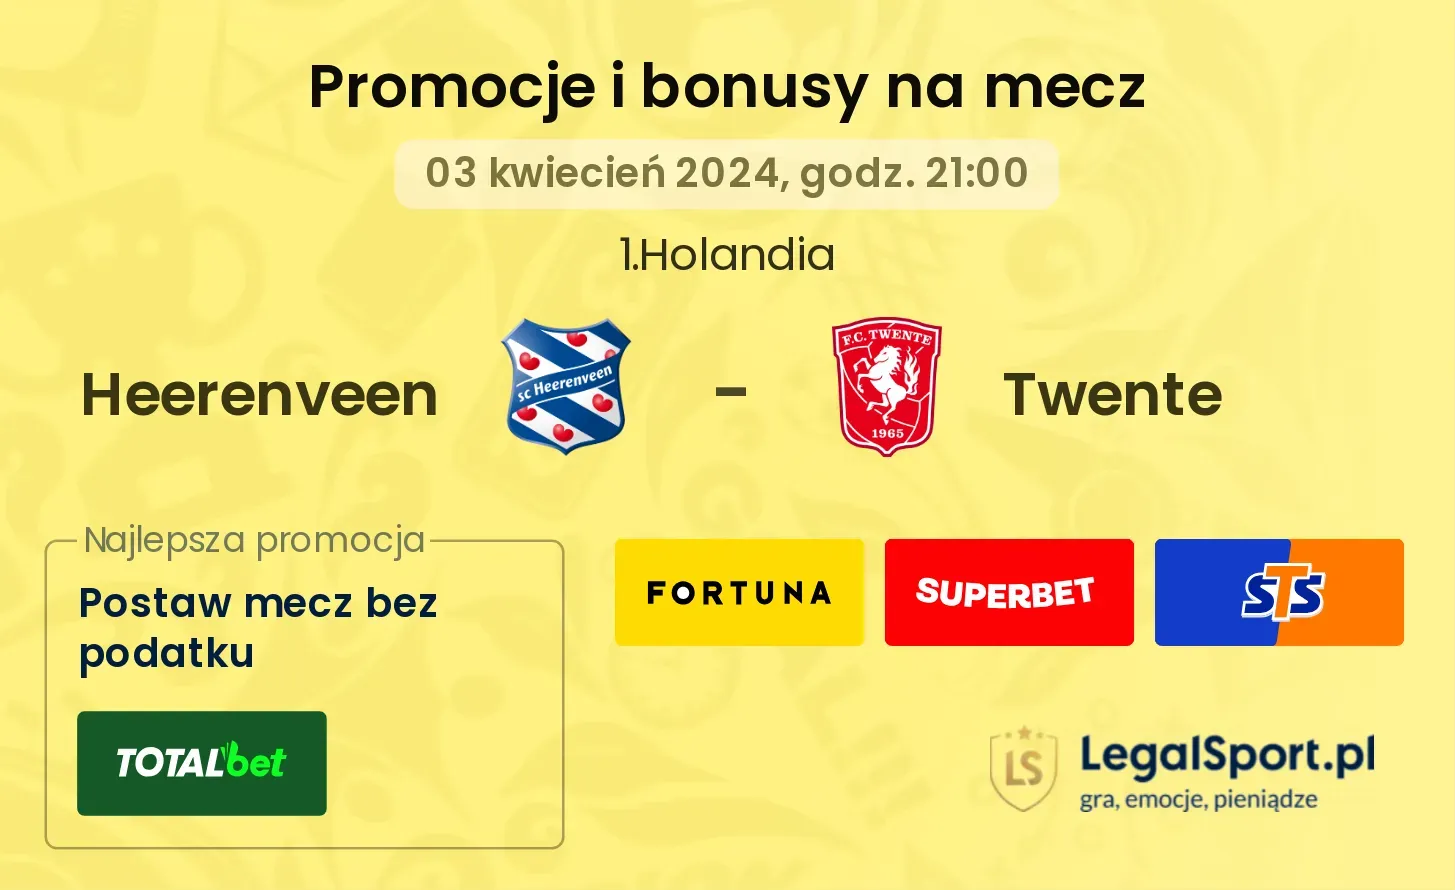 Heerenveen - Twente promocje bonusy na mecz